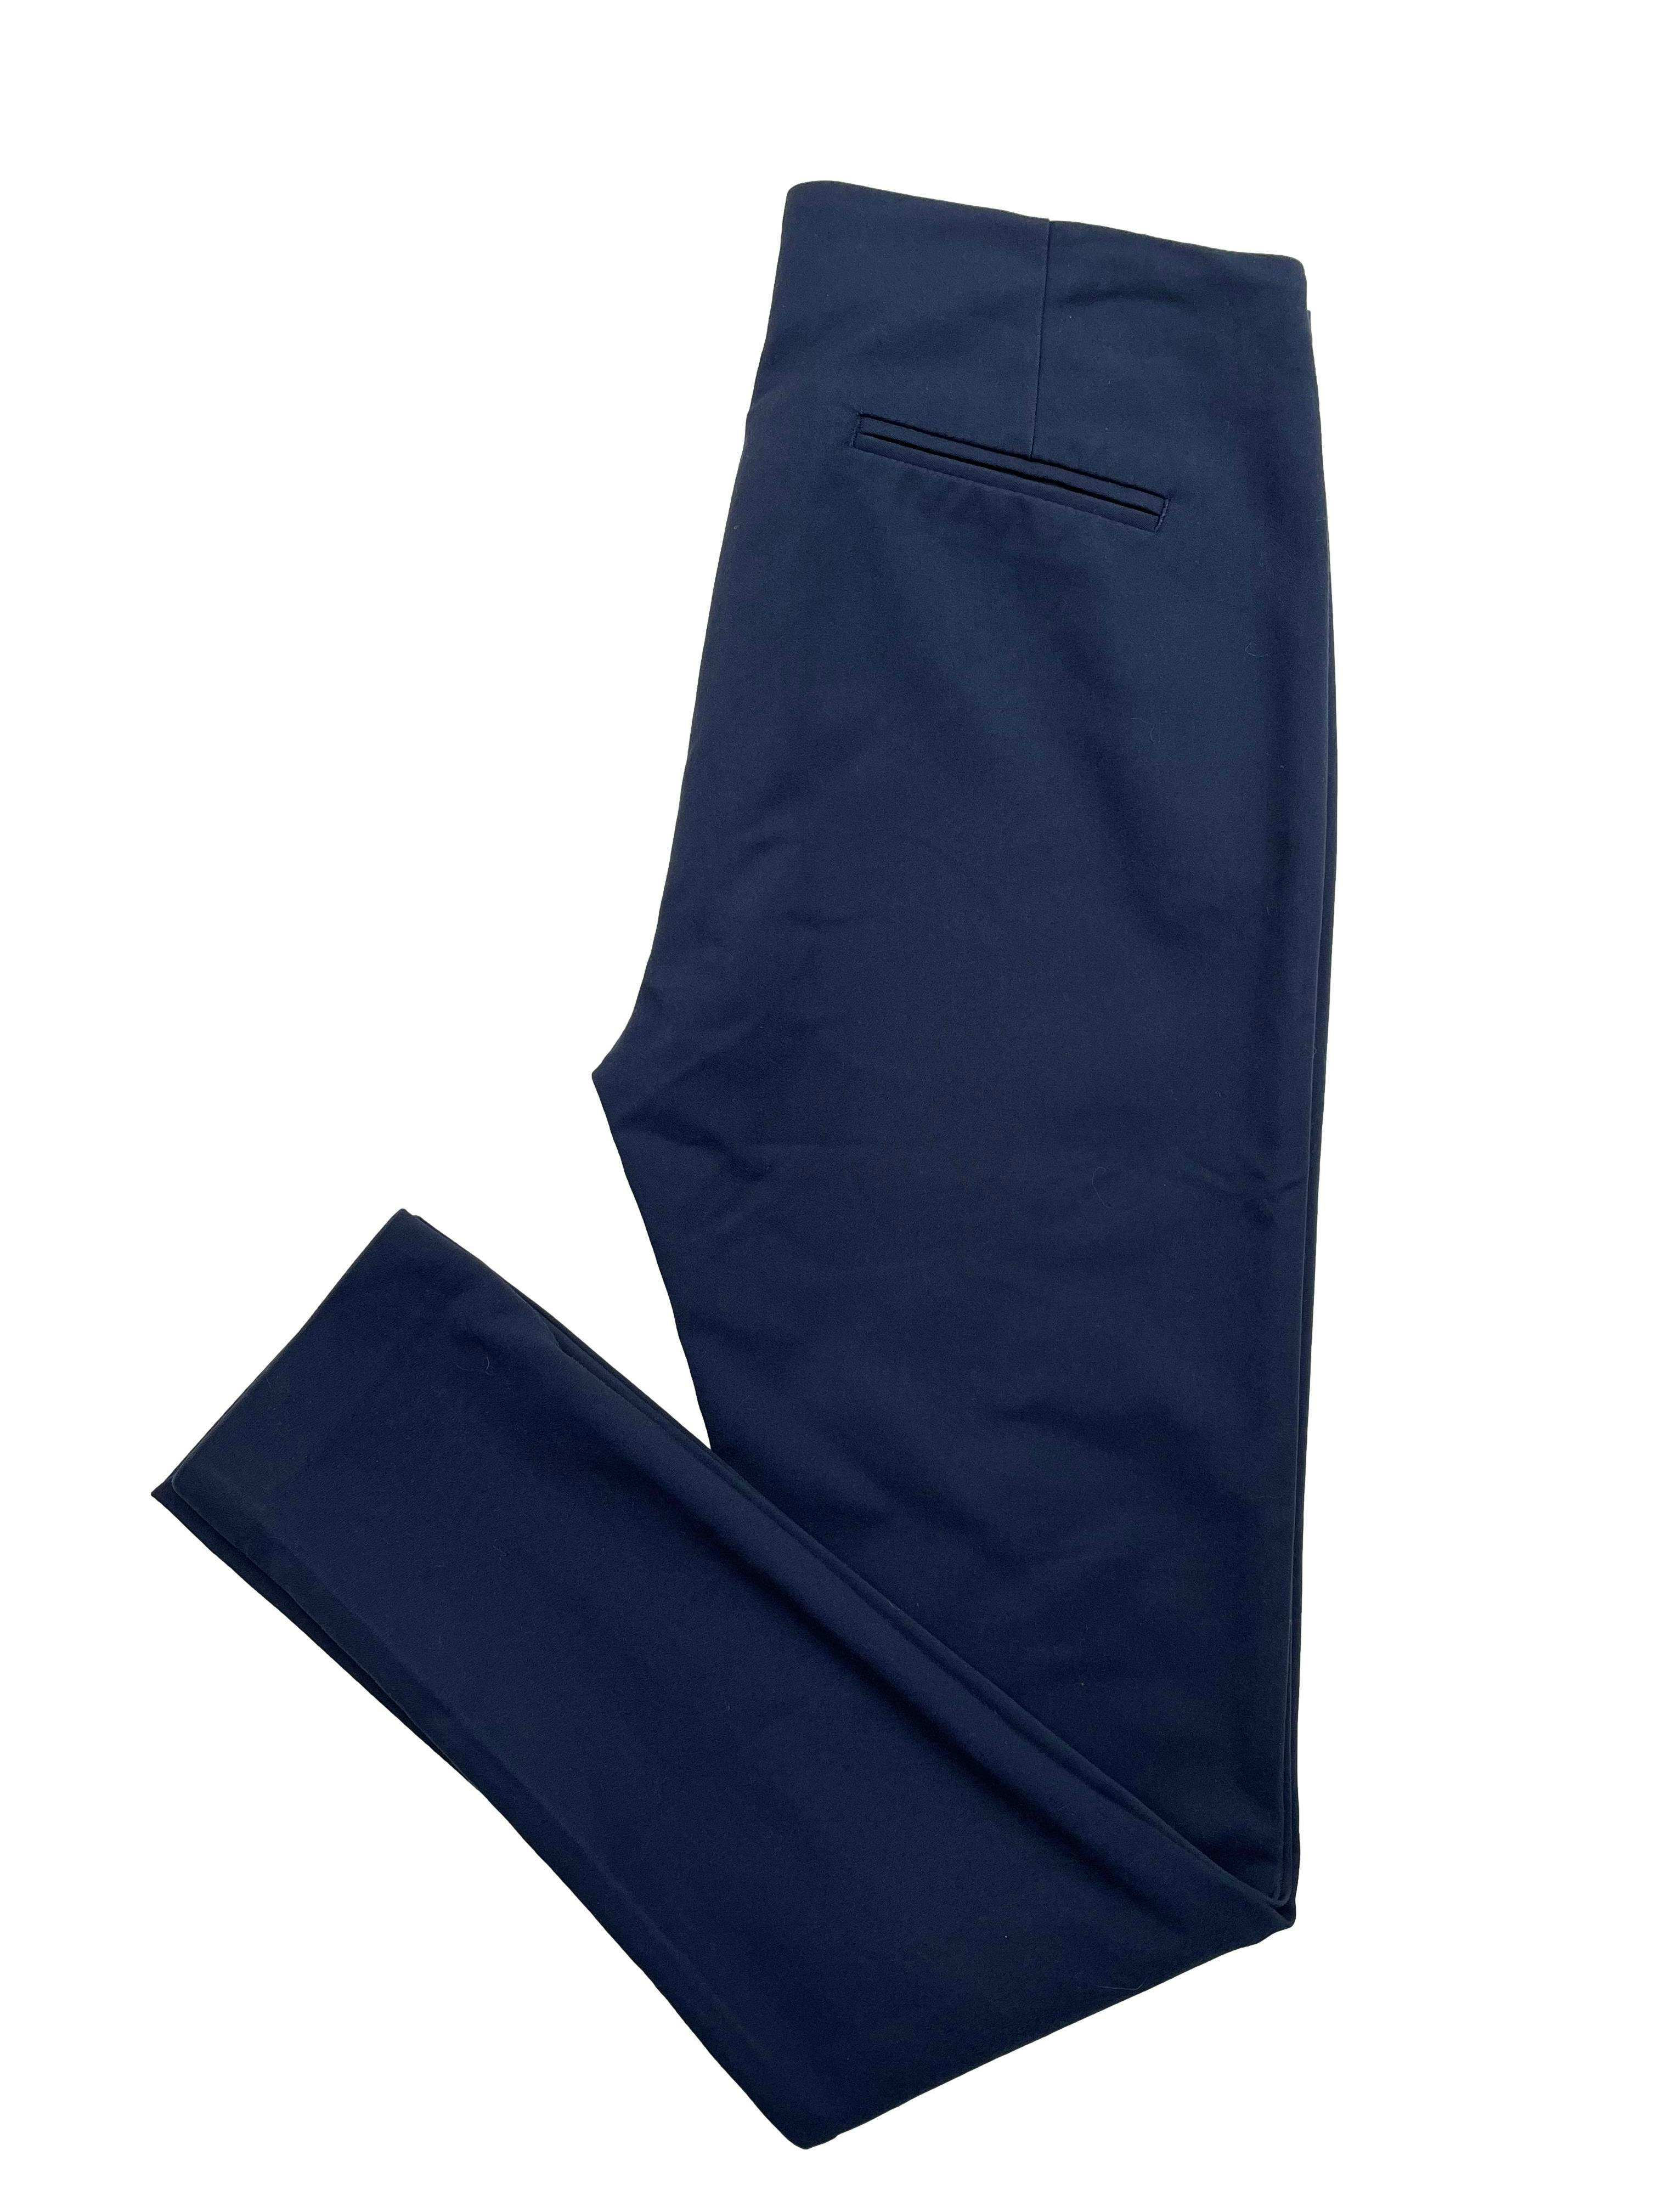 Pantalón slim fit Topitop azul marino con aplicación de cierres y falsos bolsillos posteriores. Cintura 76cm, Largo 97cm.